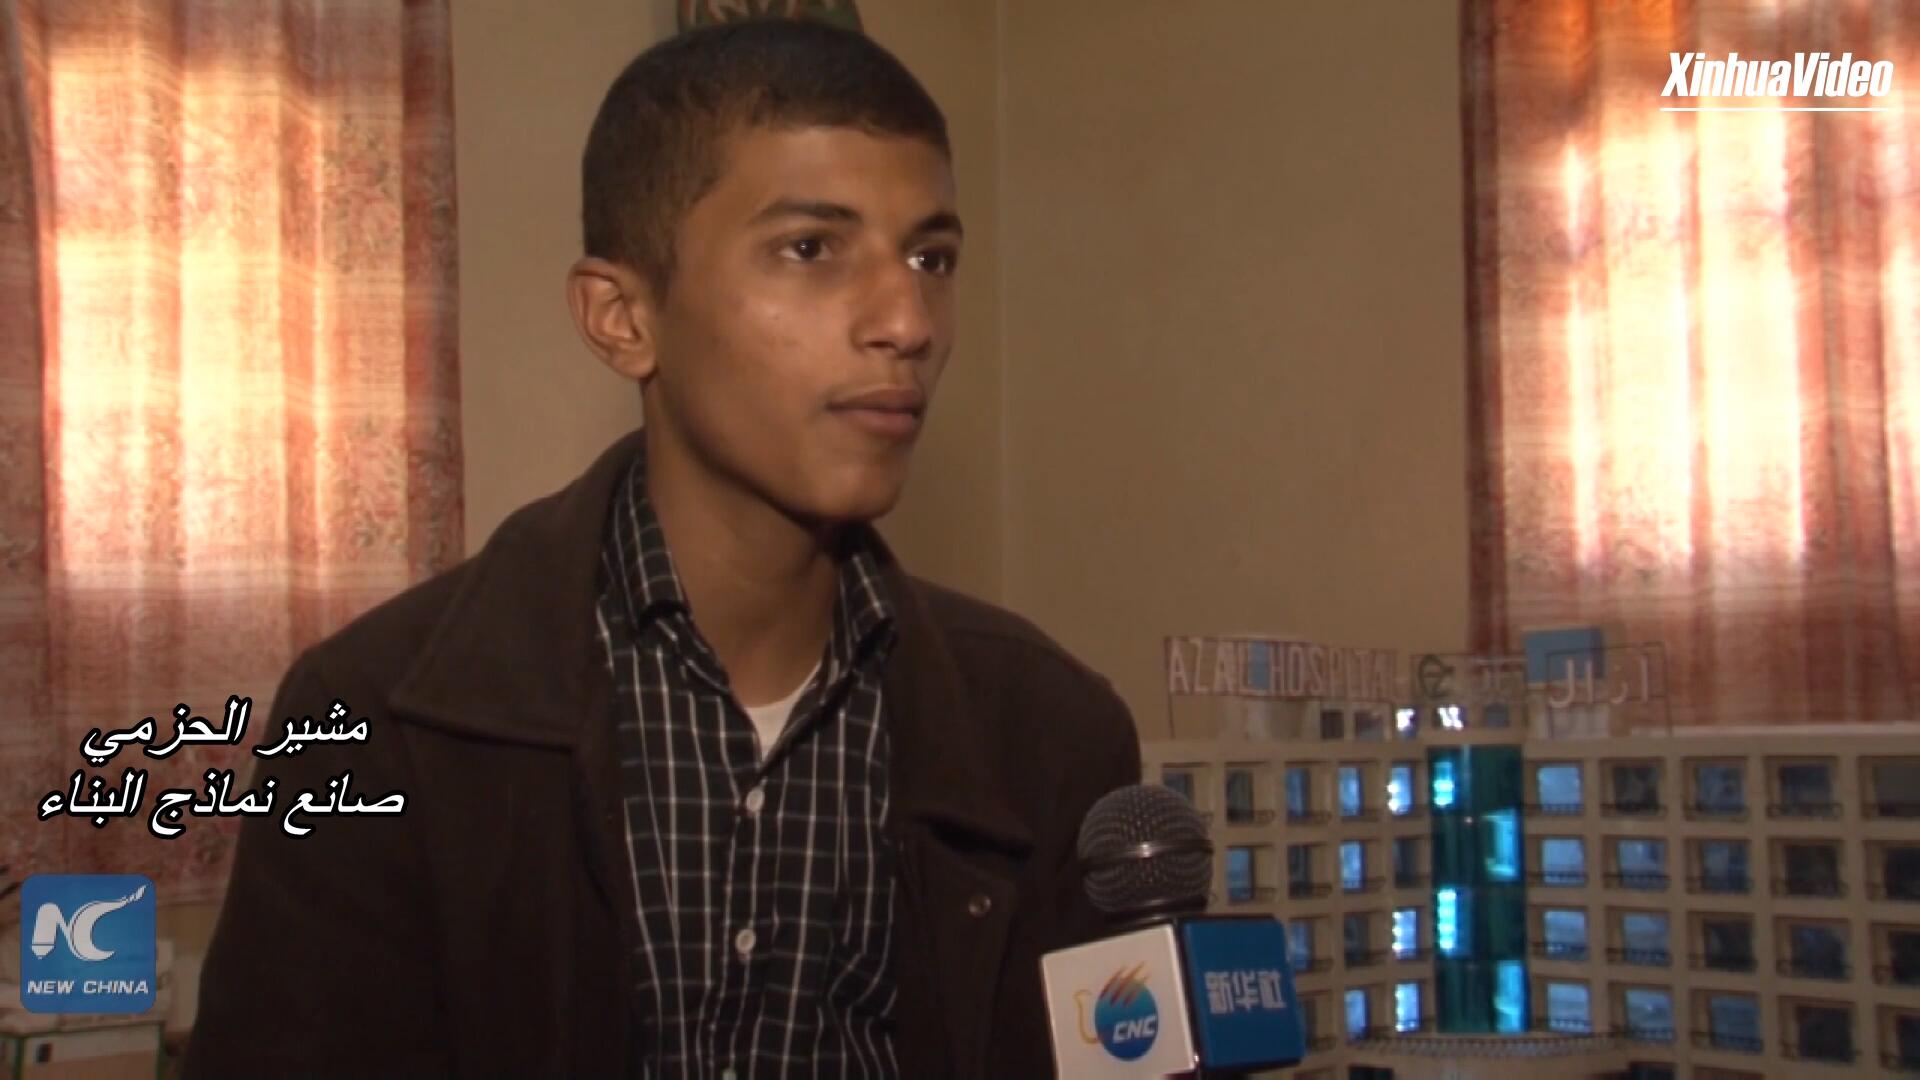 فيديو: فتى يمني يصنع نماذج لإعادة إنشاء صنعاء قبل الحرب